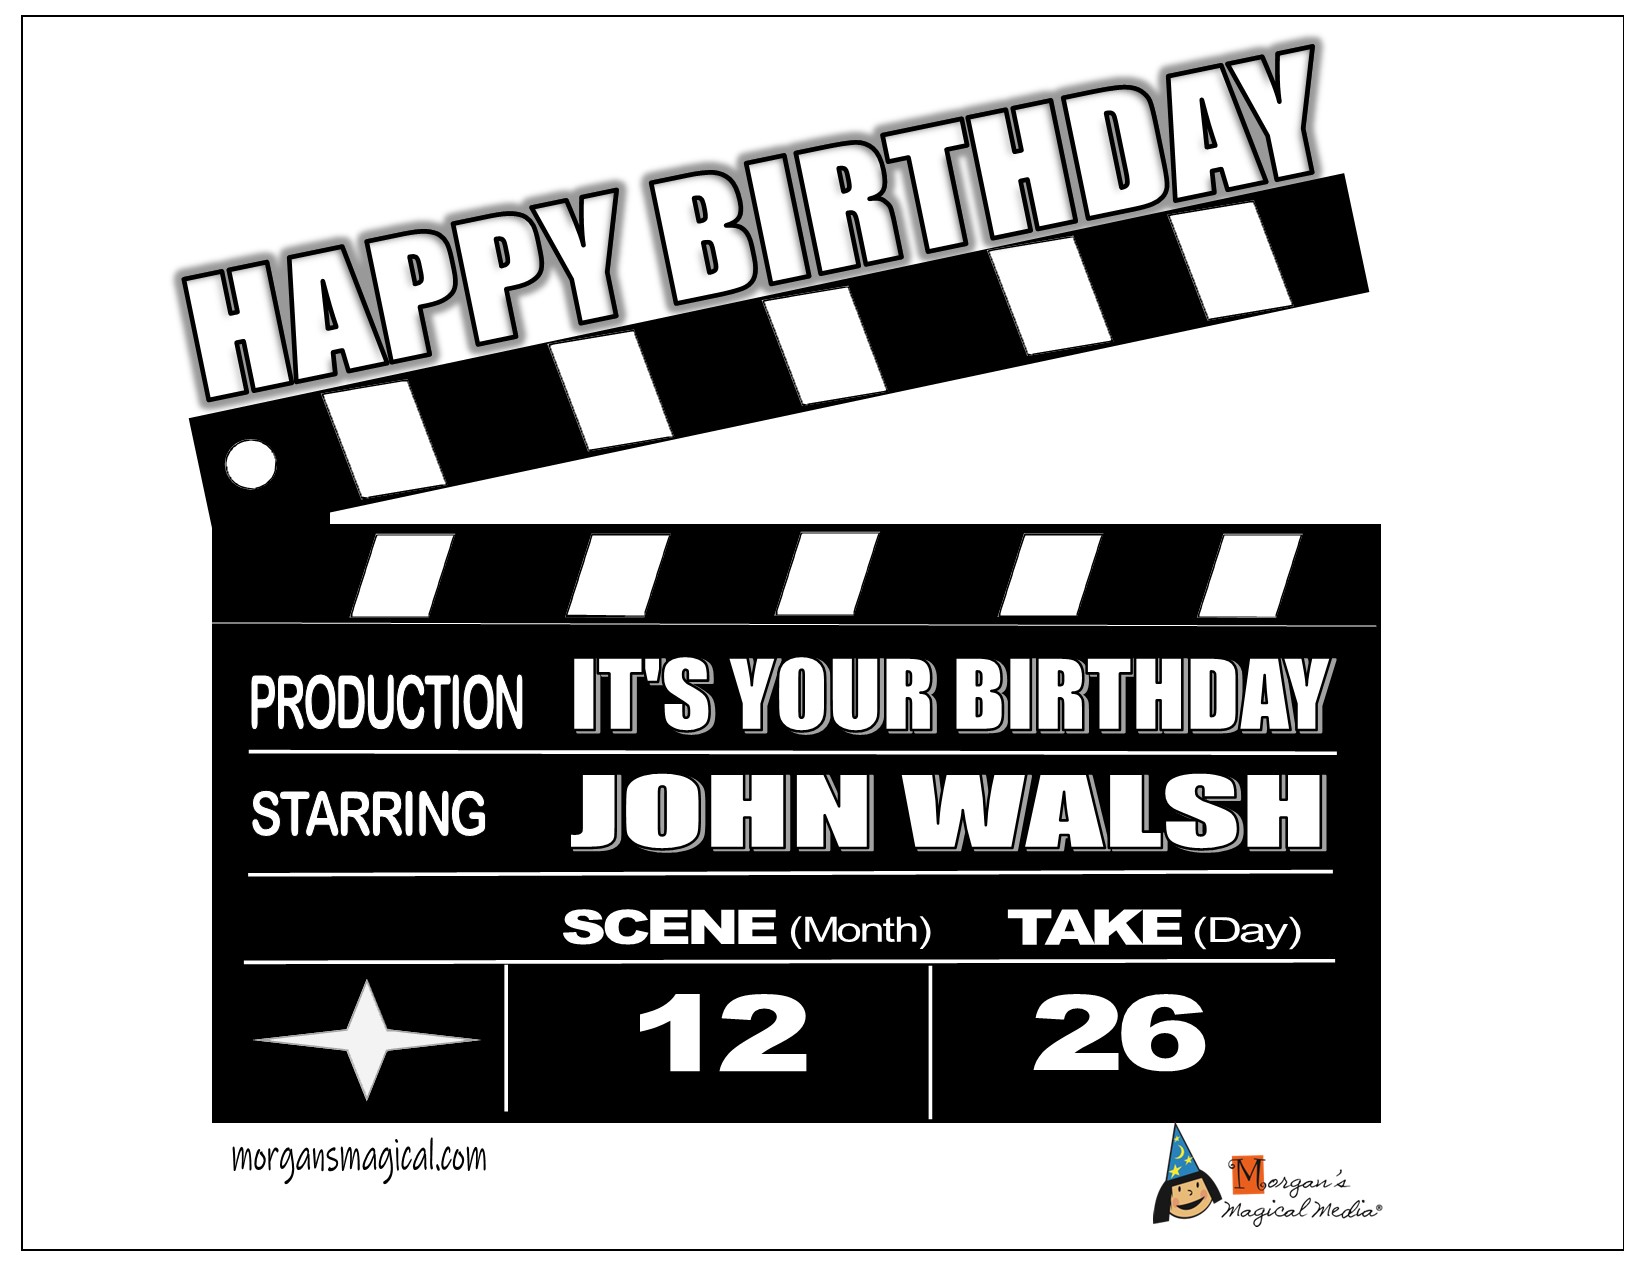 Happy Birthday John Walsh! 